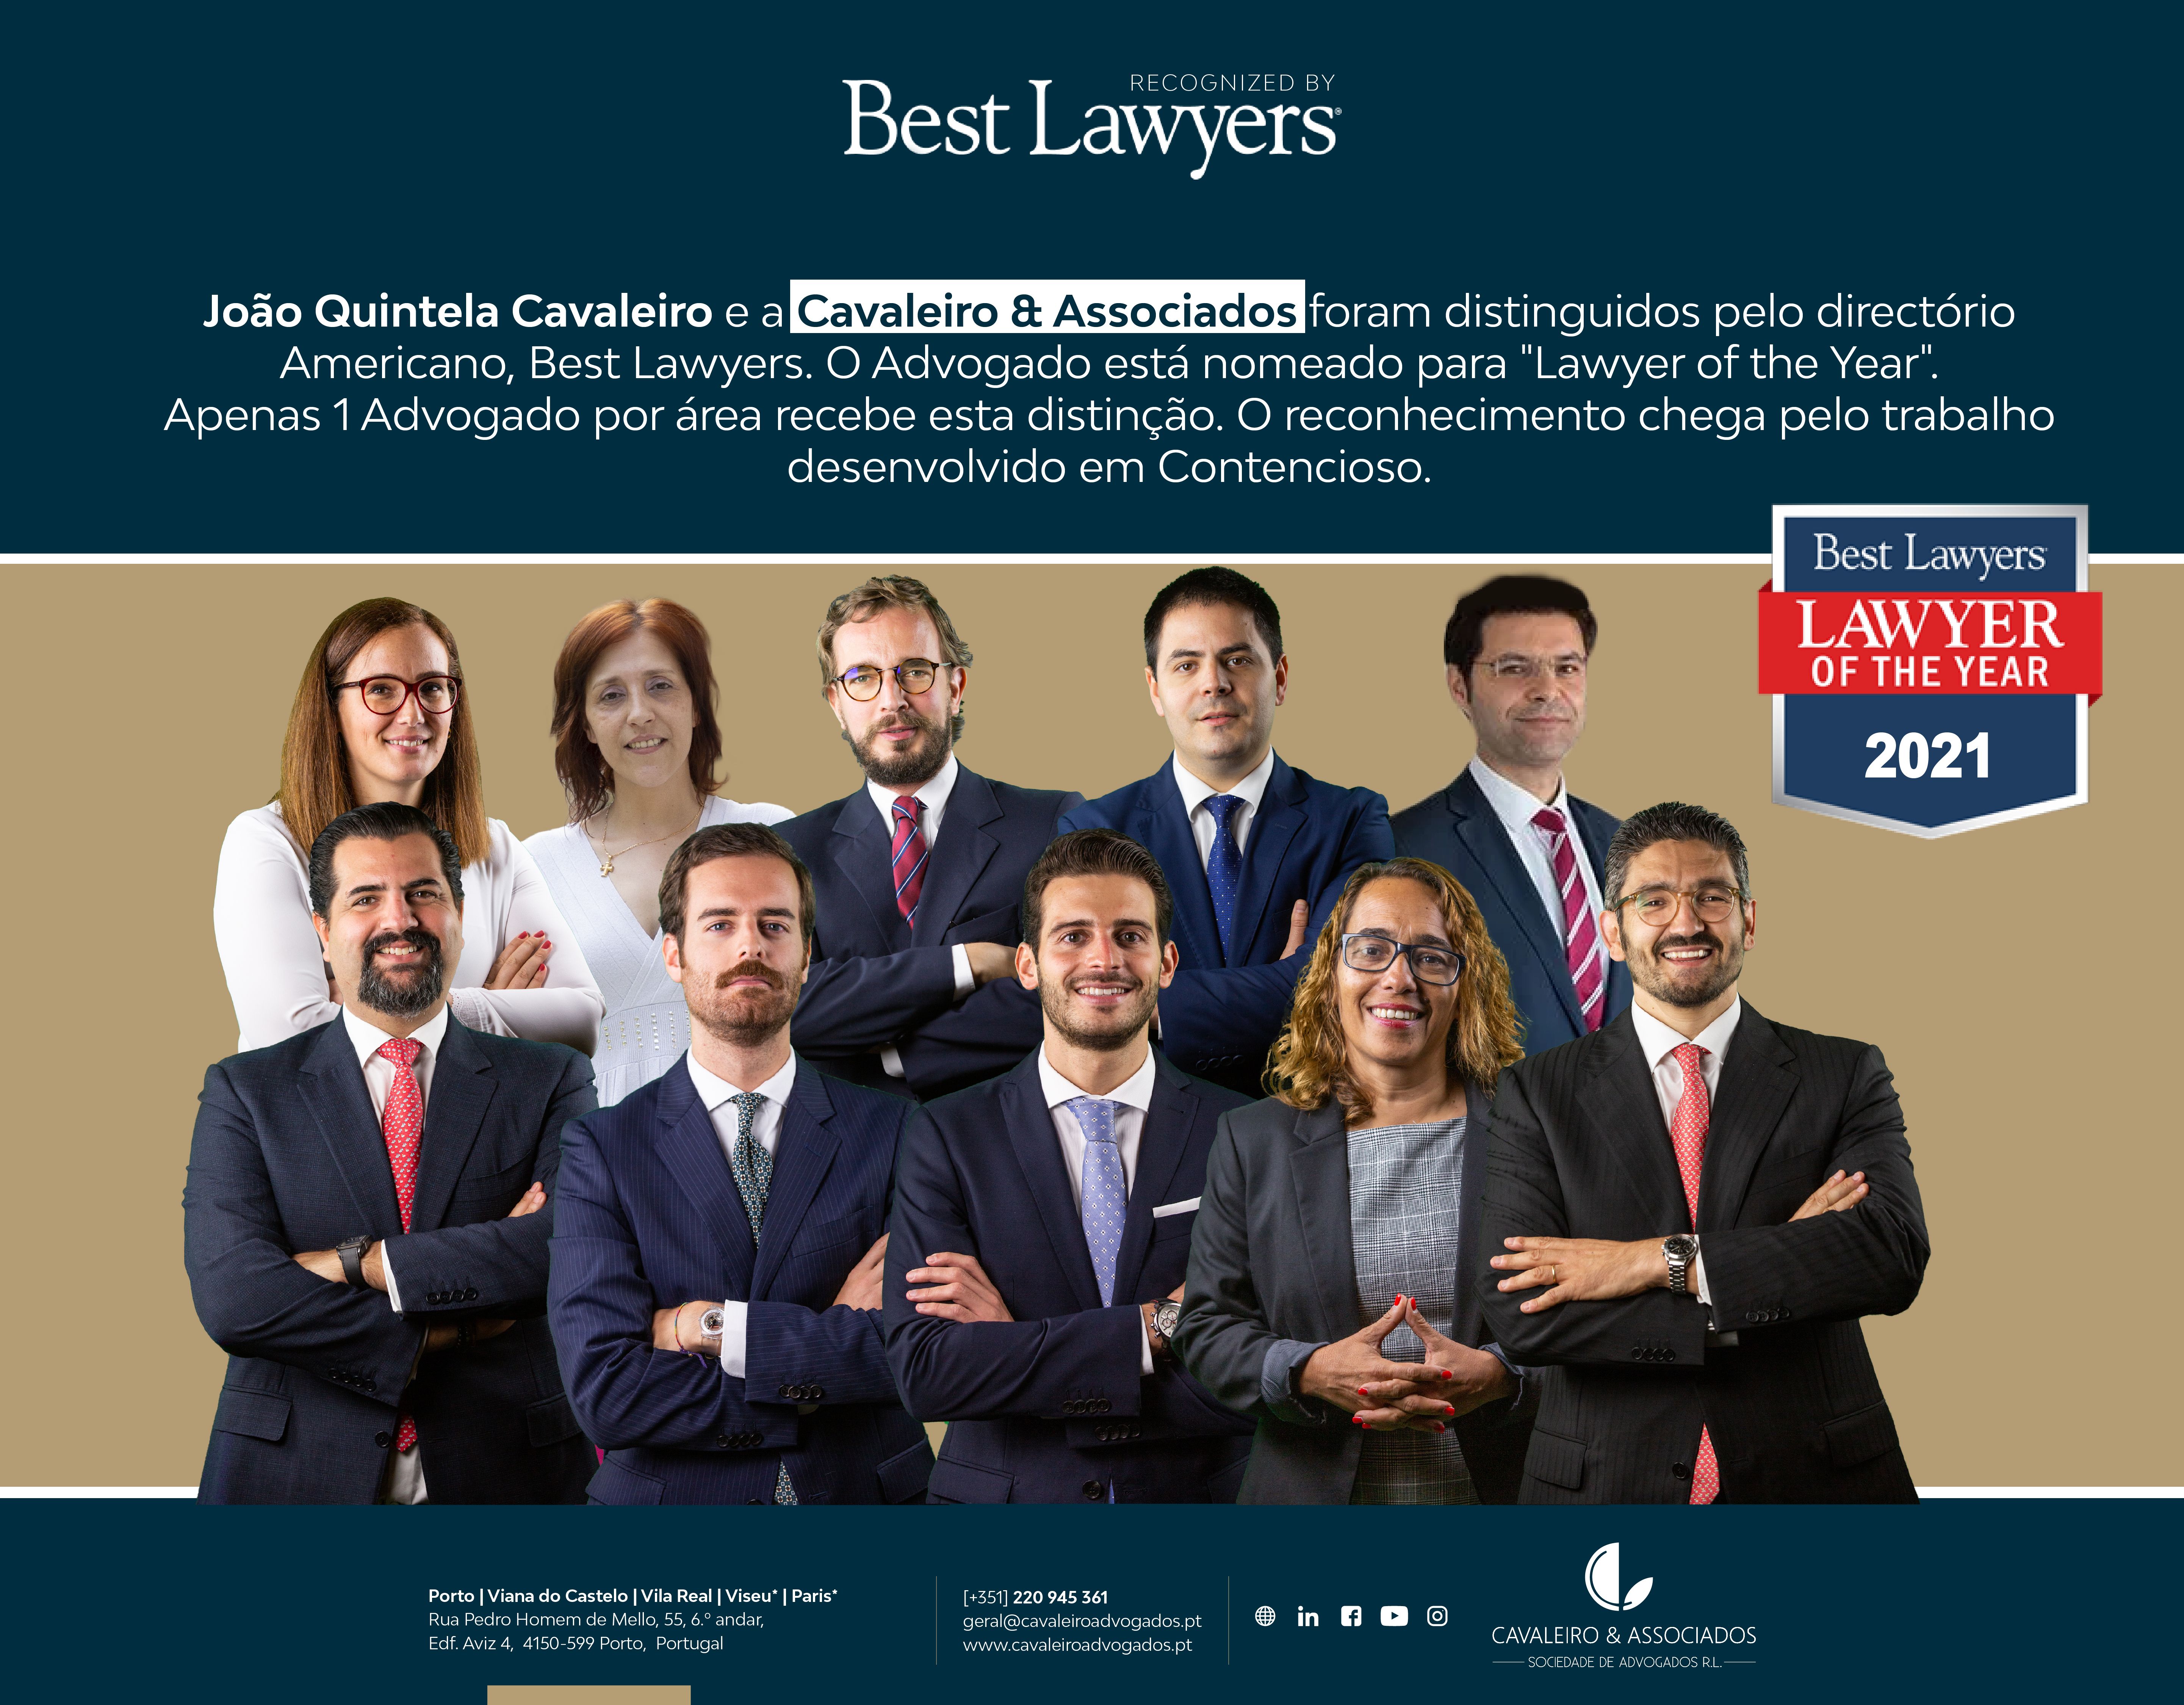 João Quintela Cavaleiro e Cavaleiro & Associados distinguidos pelo diretório americano Best Lawyers